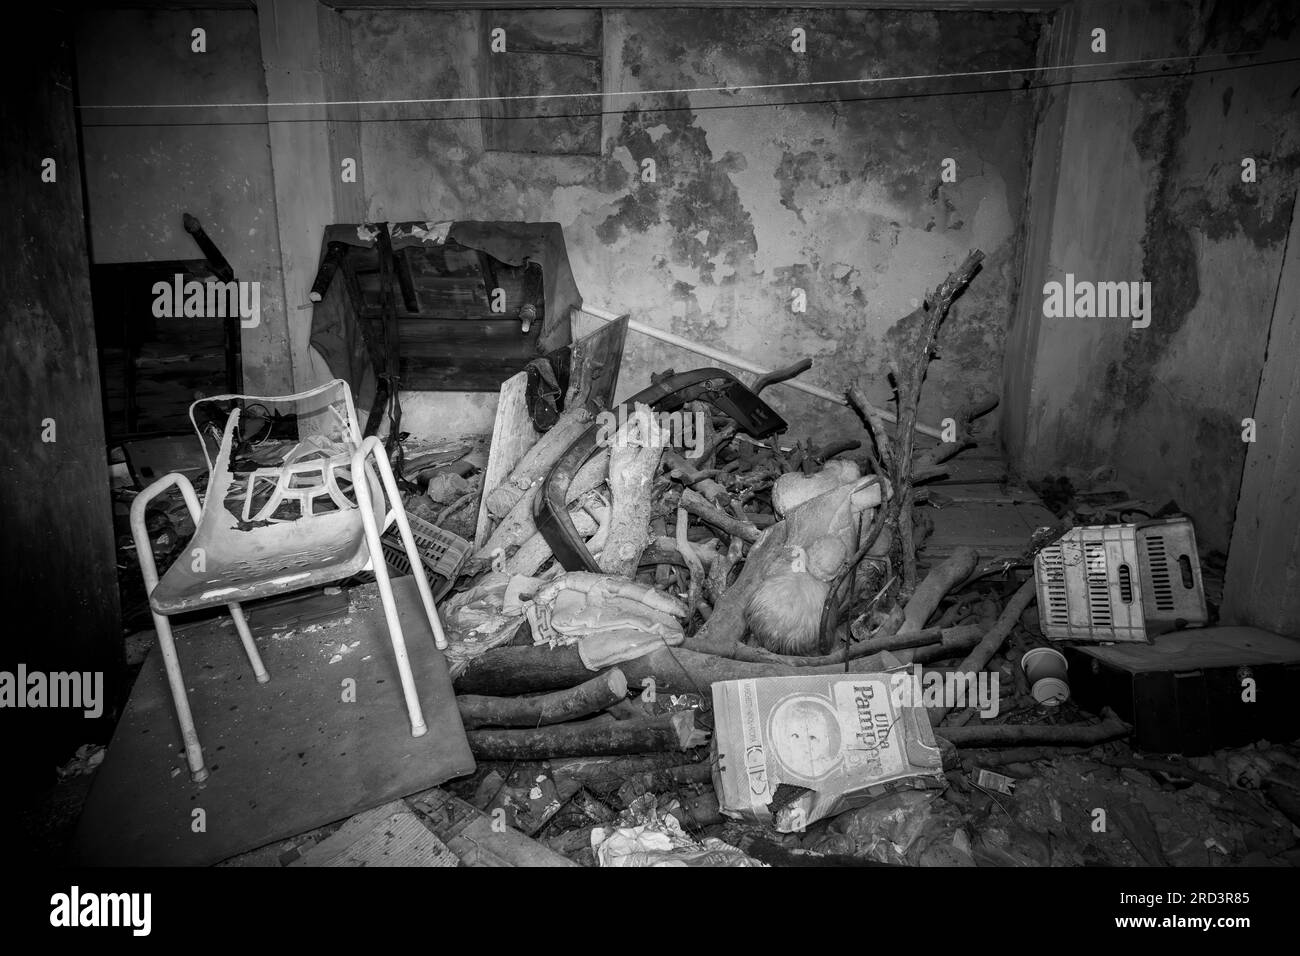 Une chambre dans une maison abandonnée pleine de gravats, meubles cassés renversés et ordures ménagères. Une image monochrome. Banque D'Images